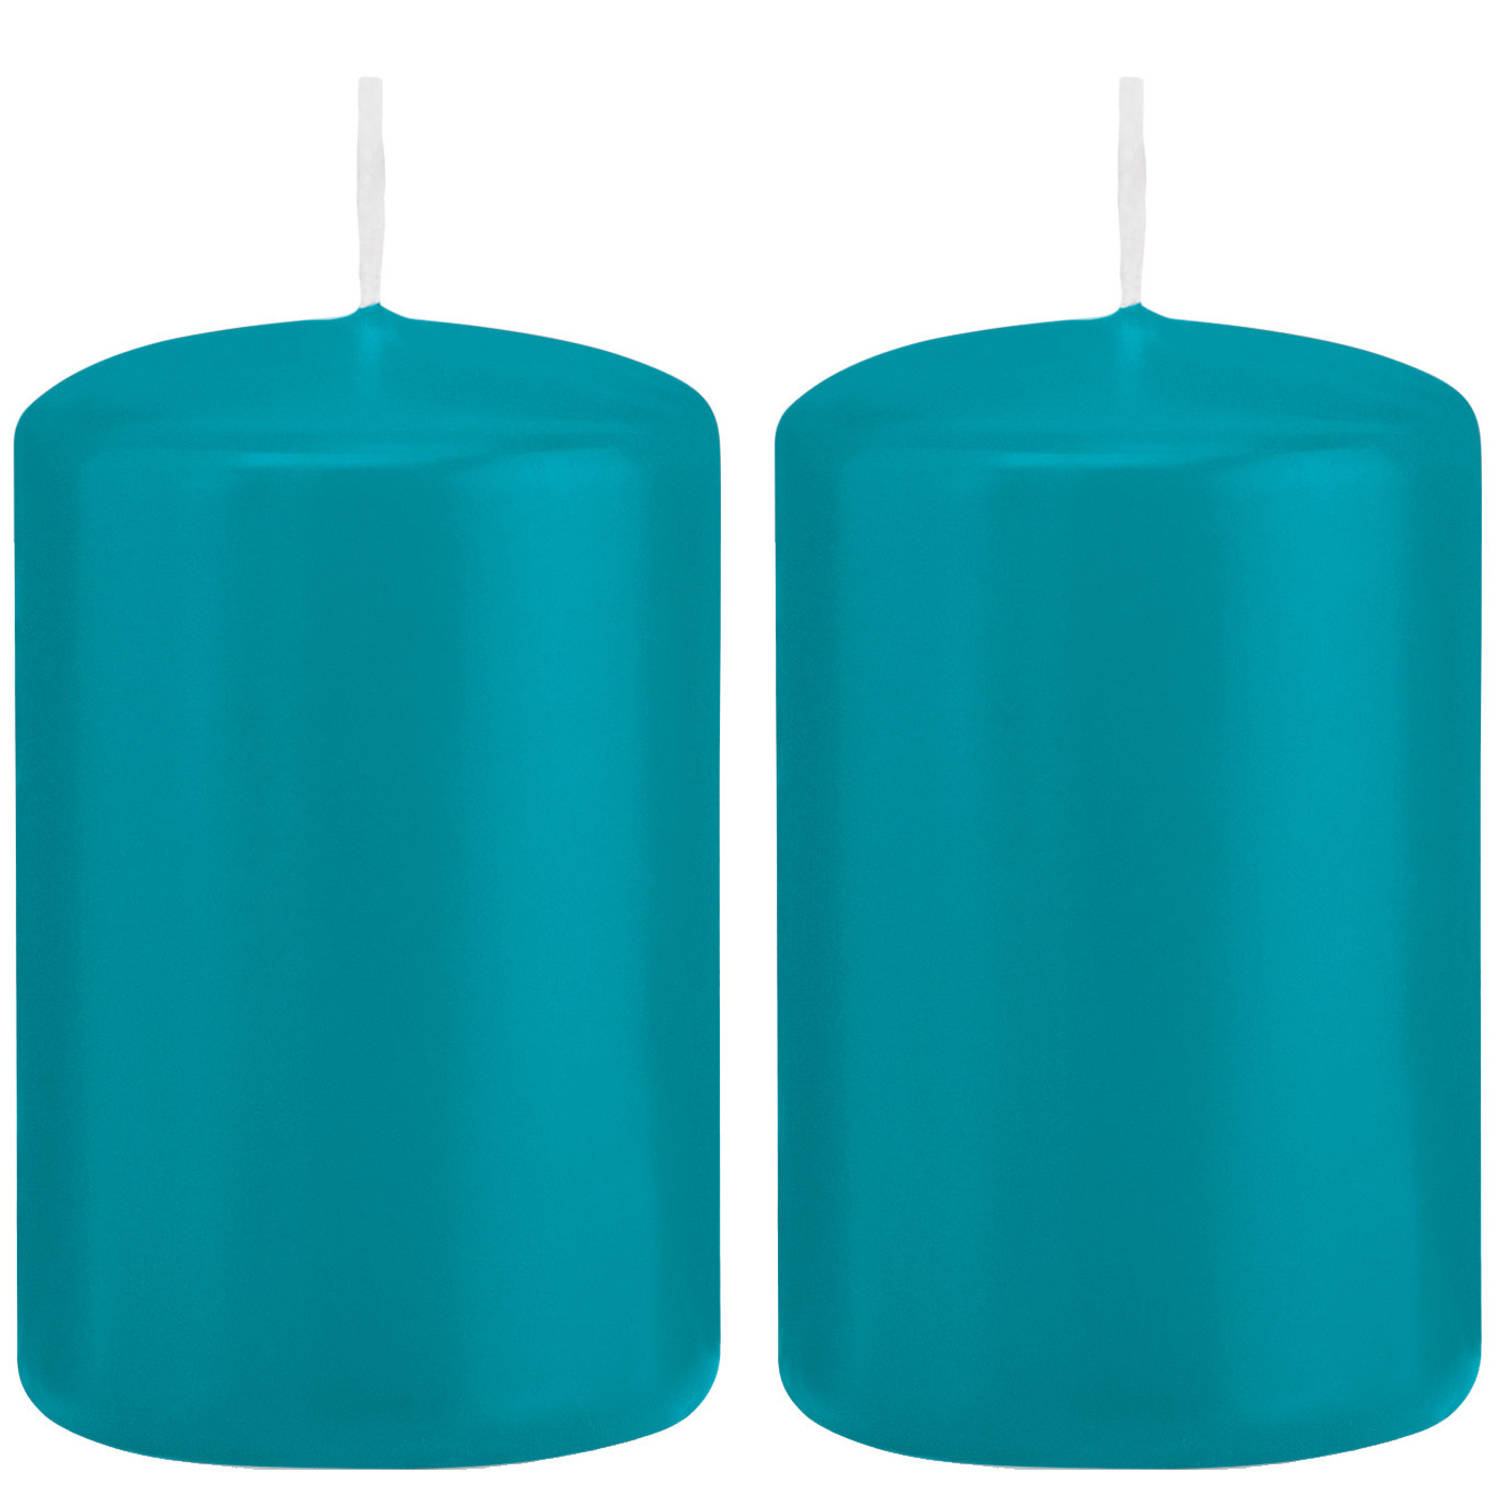 2x Turquoise Blauwe Cilinderkaarsen-stompkaarsen 5 X 8 Cm 18 Branduren Stompkaarsen